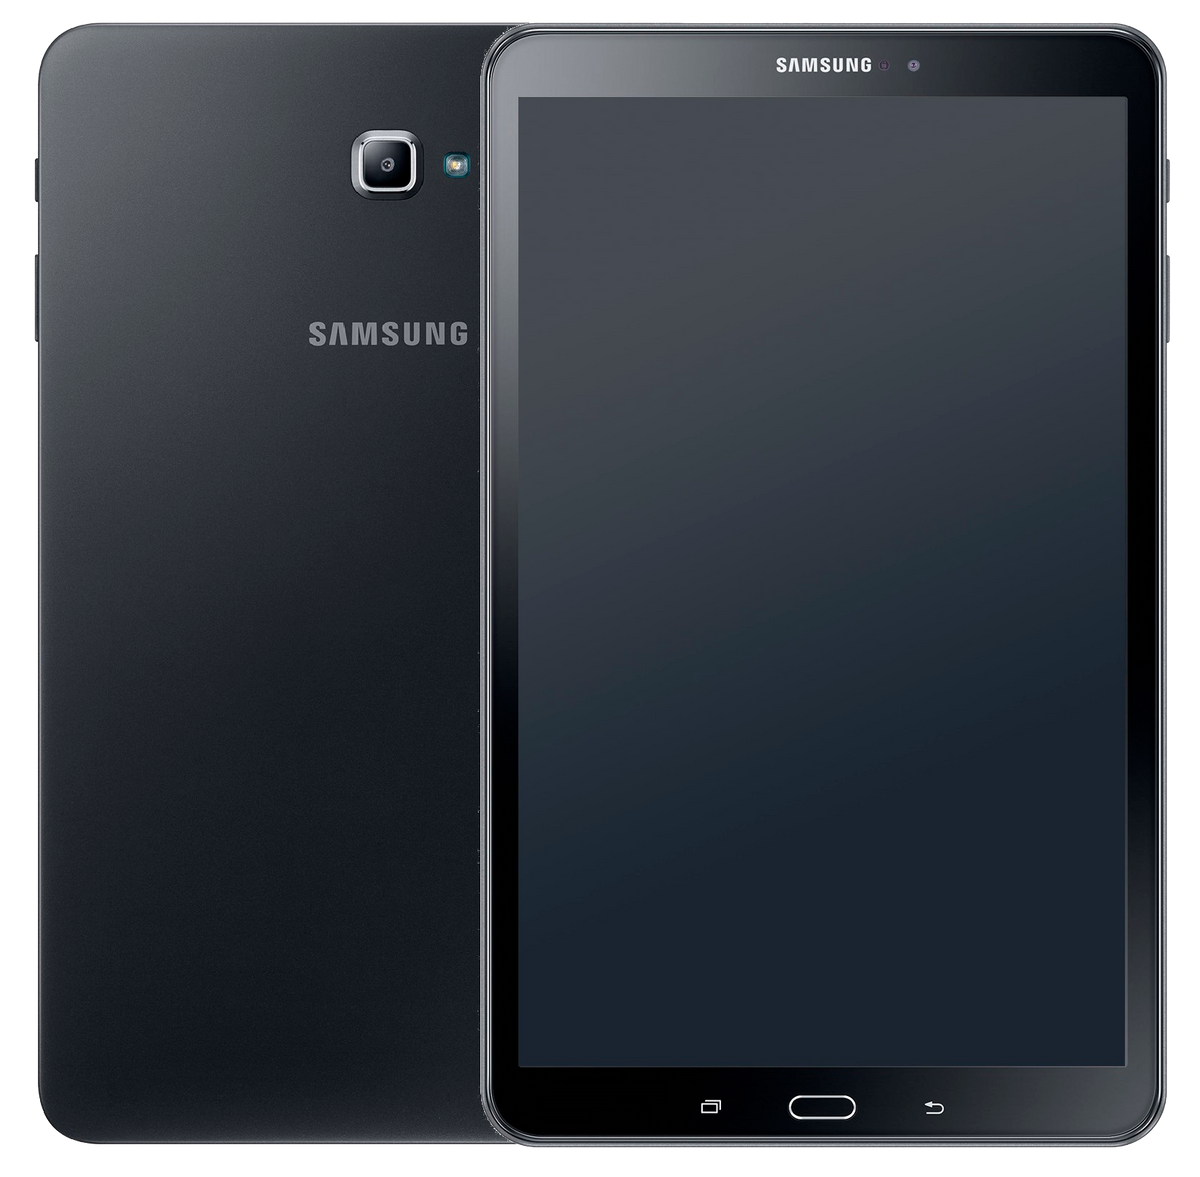 Samsung Galaxy Tab A 10.1 (2016) Wi-Fi T580 schwarz - Ohne Vertrag